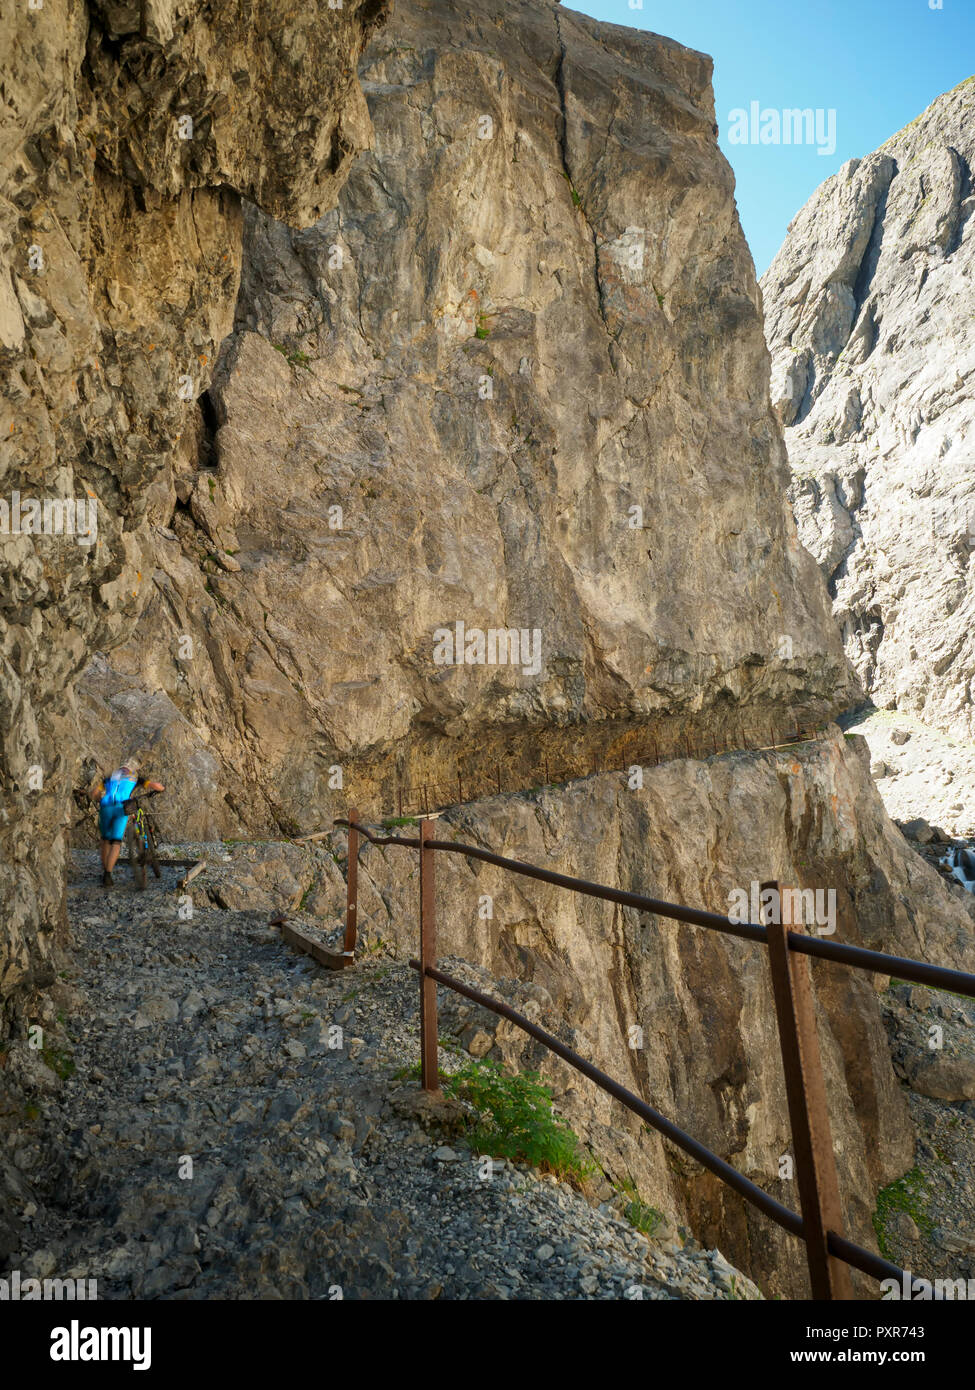 Switzerland, Lower Engadin, mountainbiker on path towards Uina gorge Stock Photo